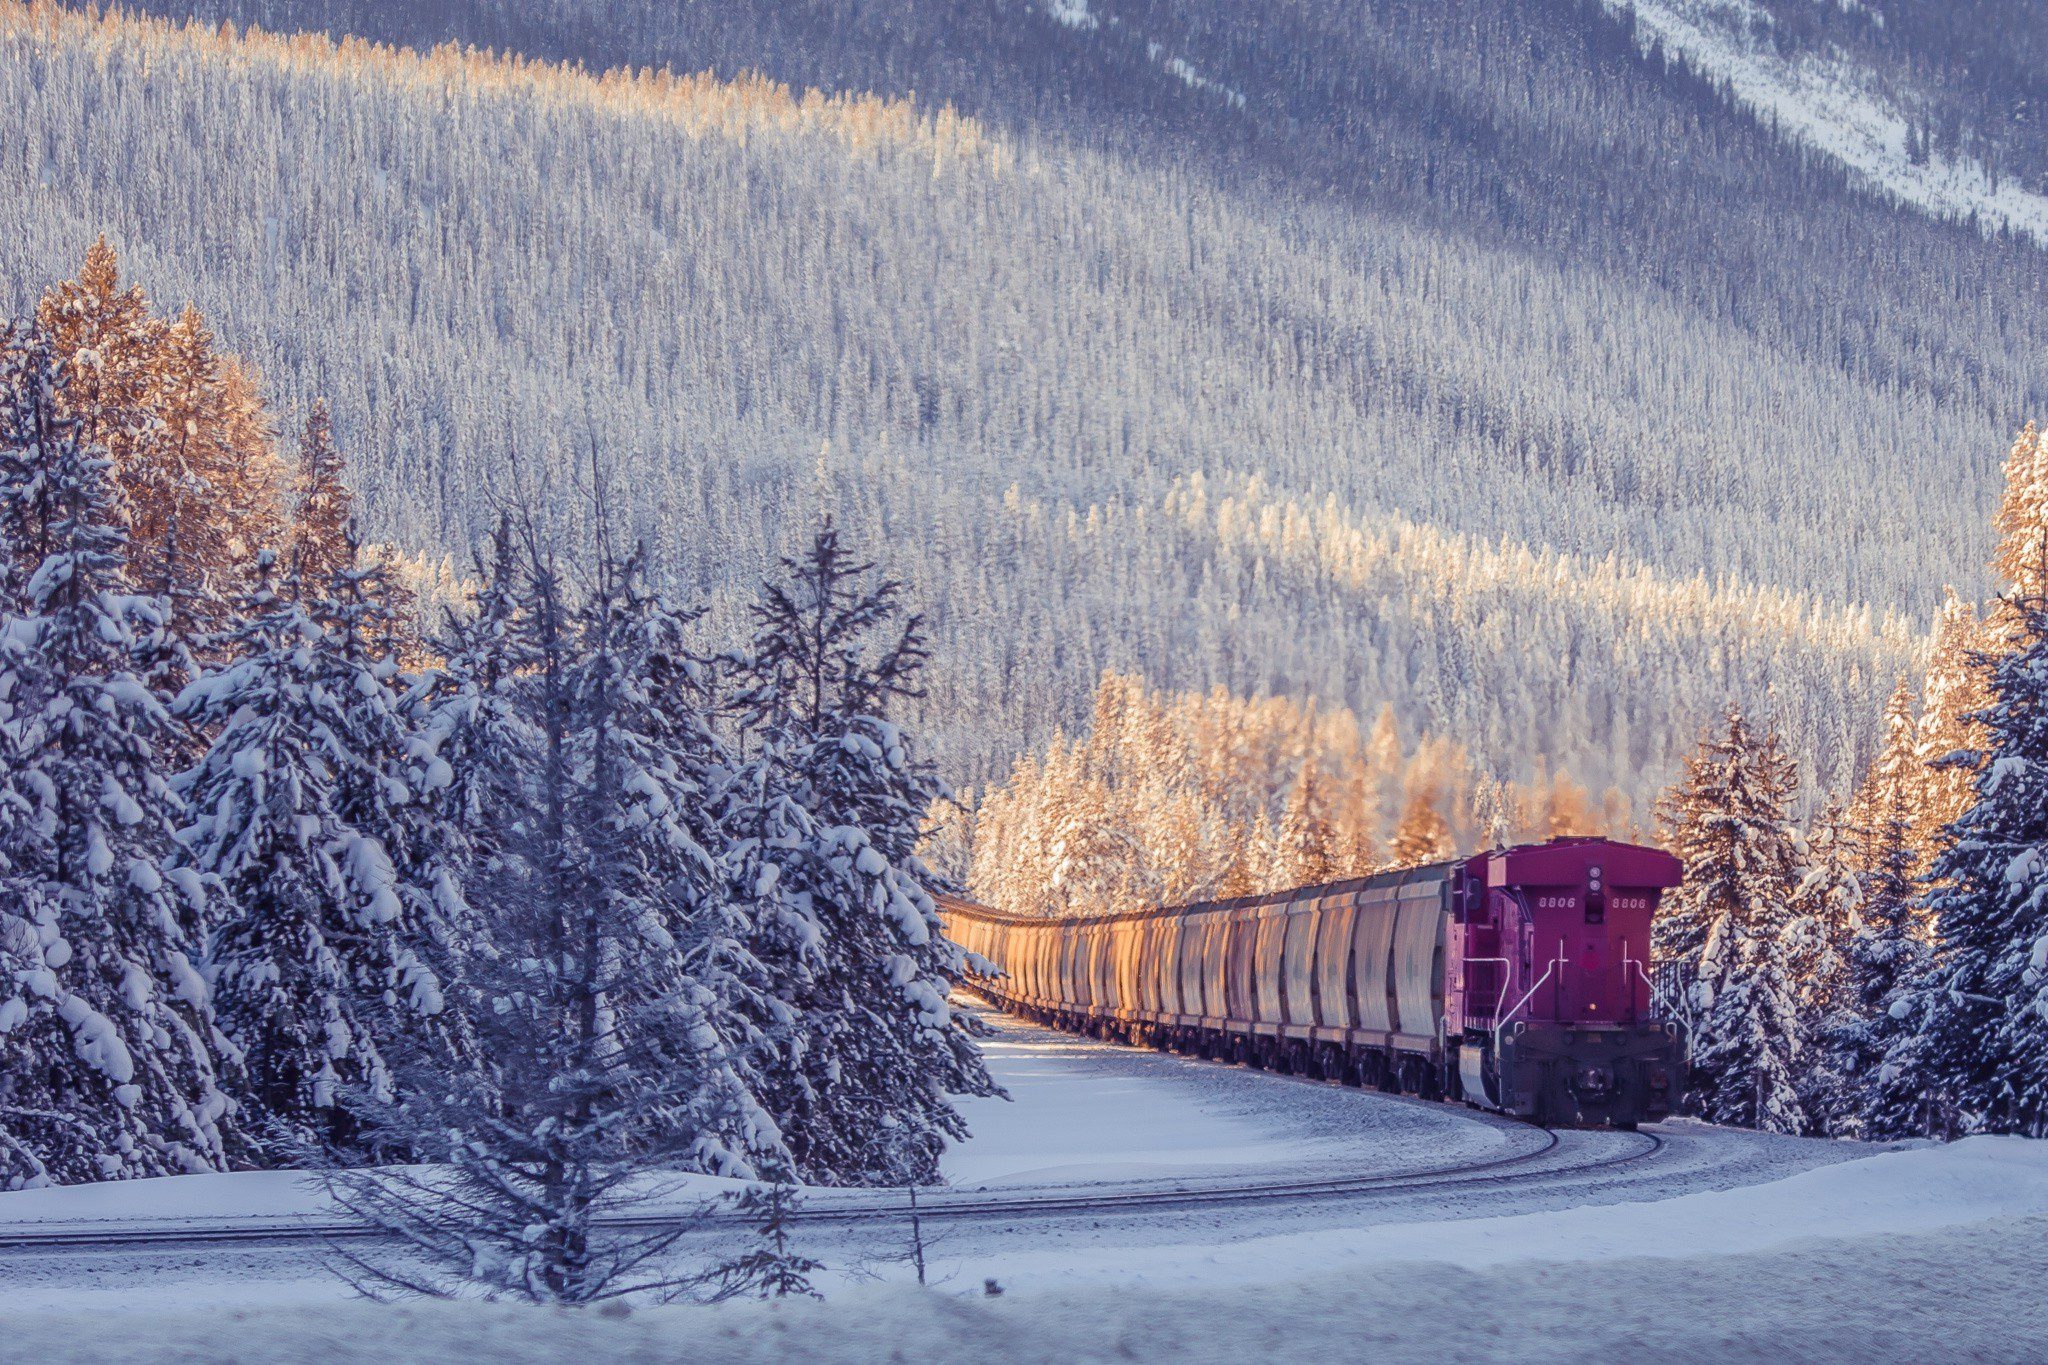 winter train scene